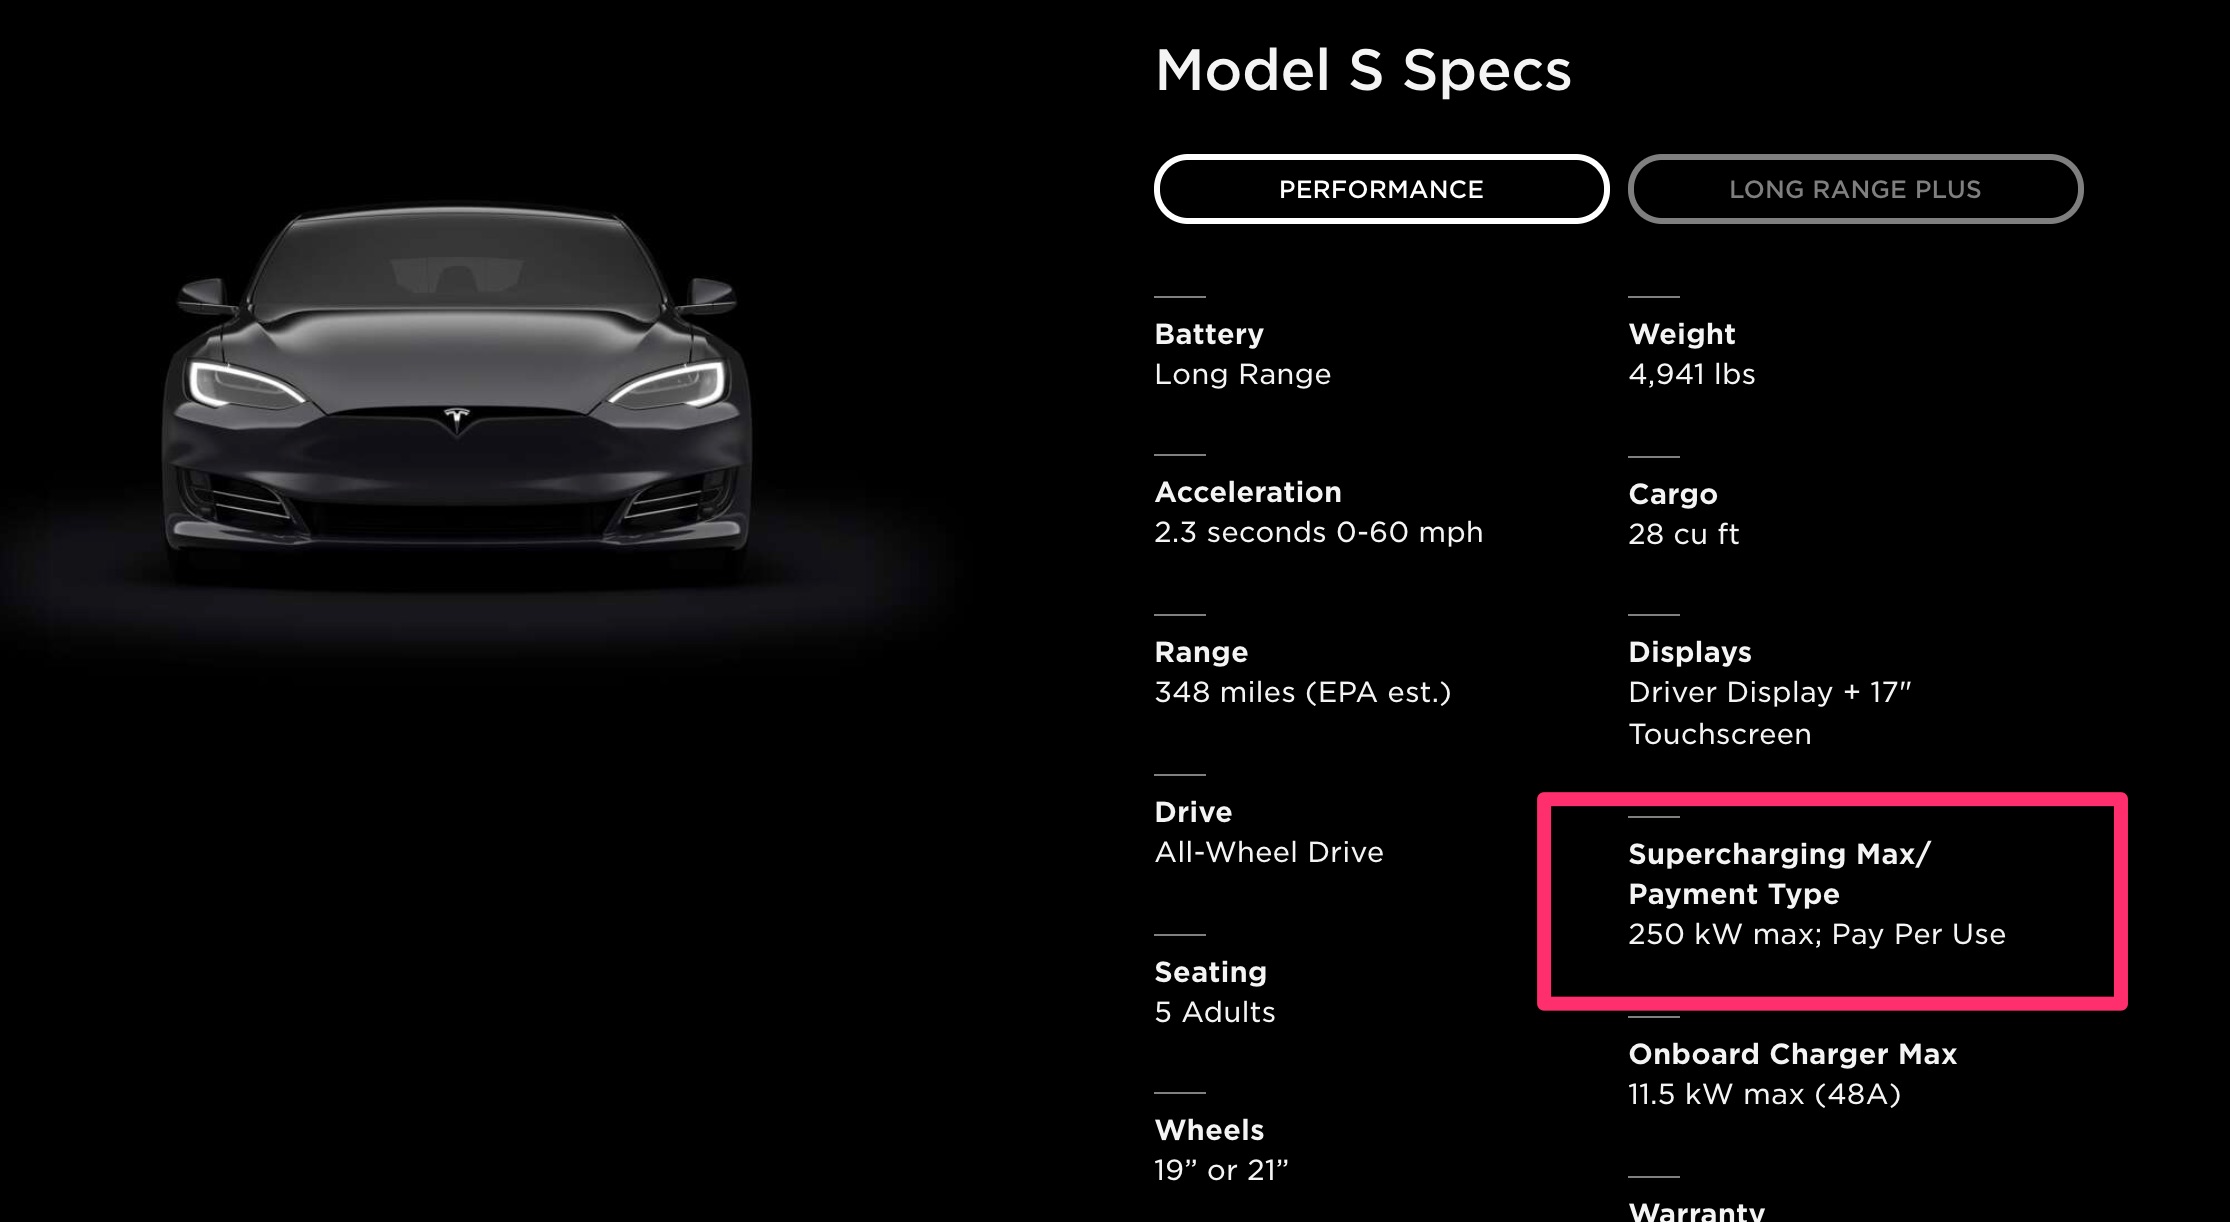 Temps de recharge d'une Tesla selon les modèles